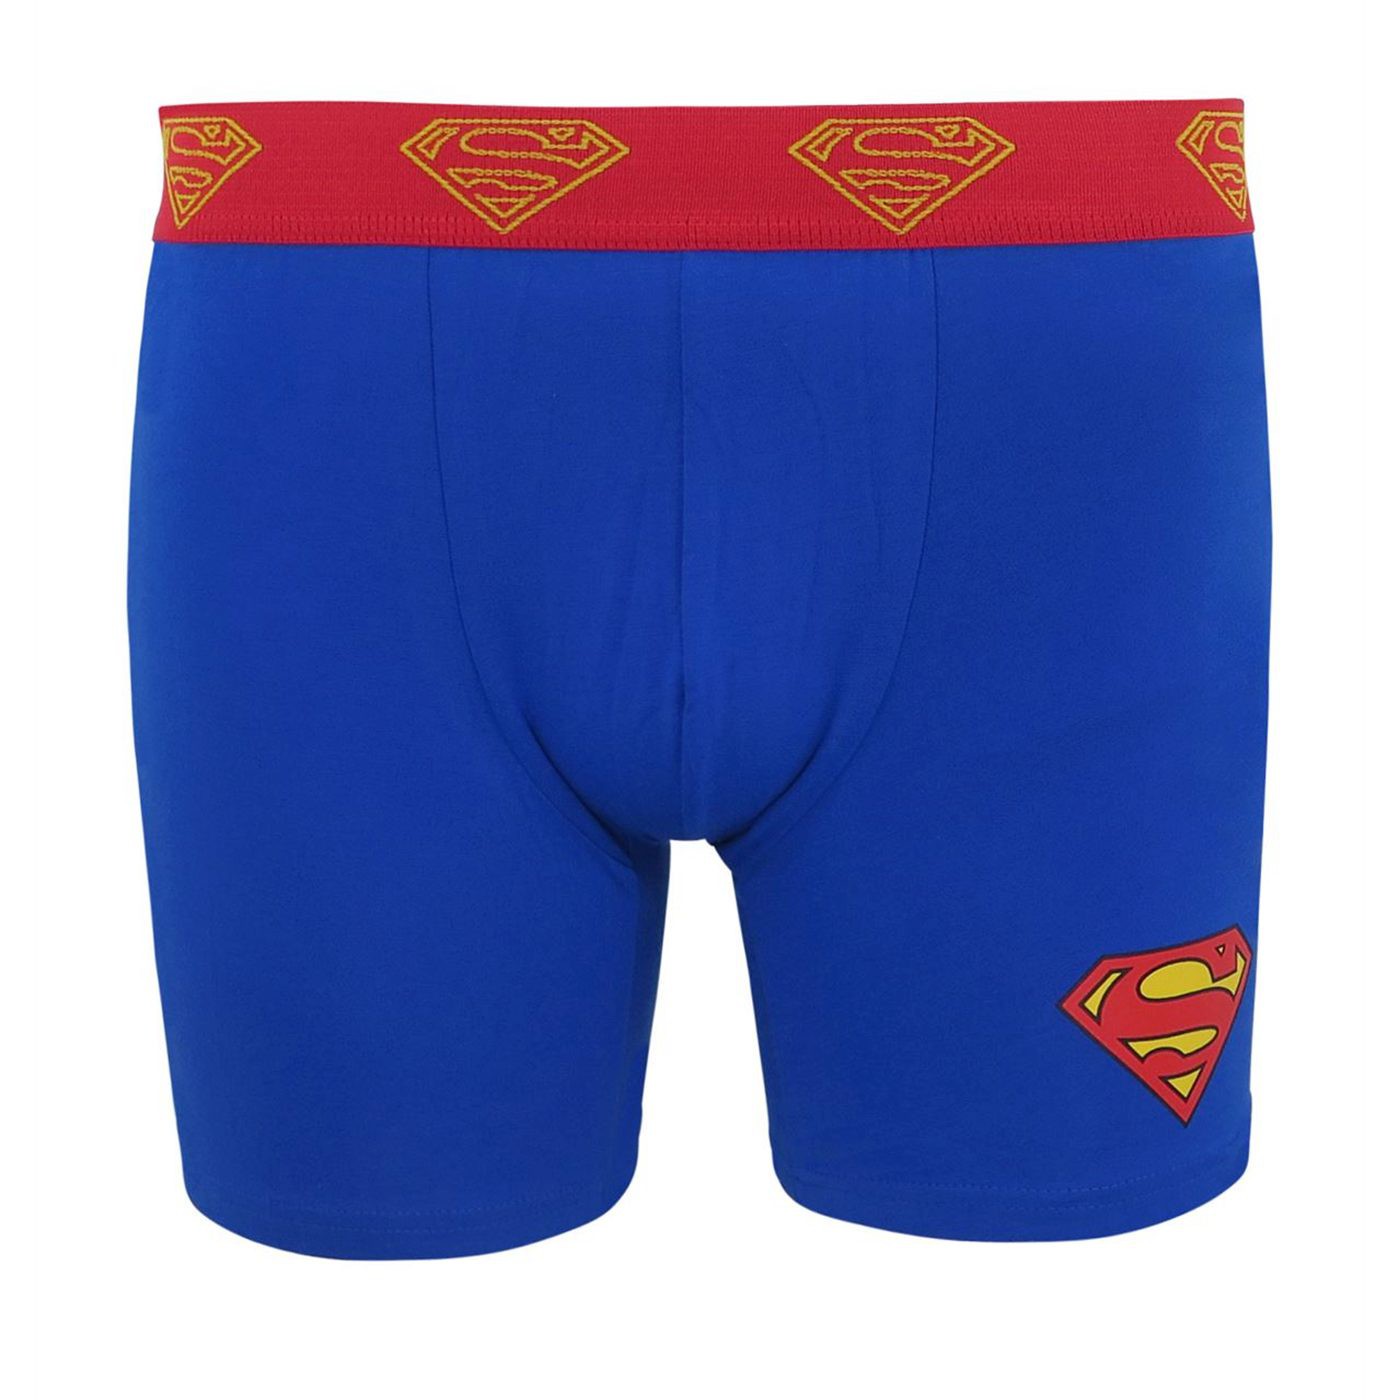 Superman Symbol Men's Underwear Fashion Briefs-Large (36-38)